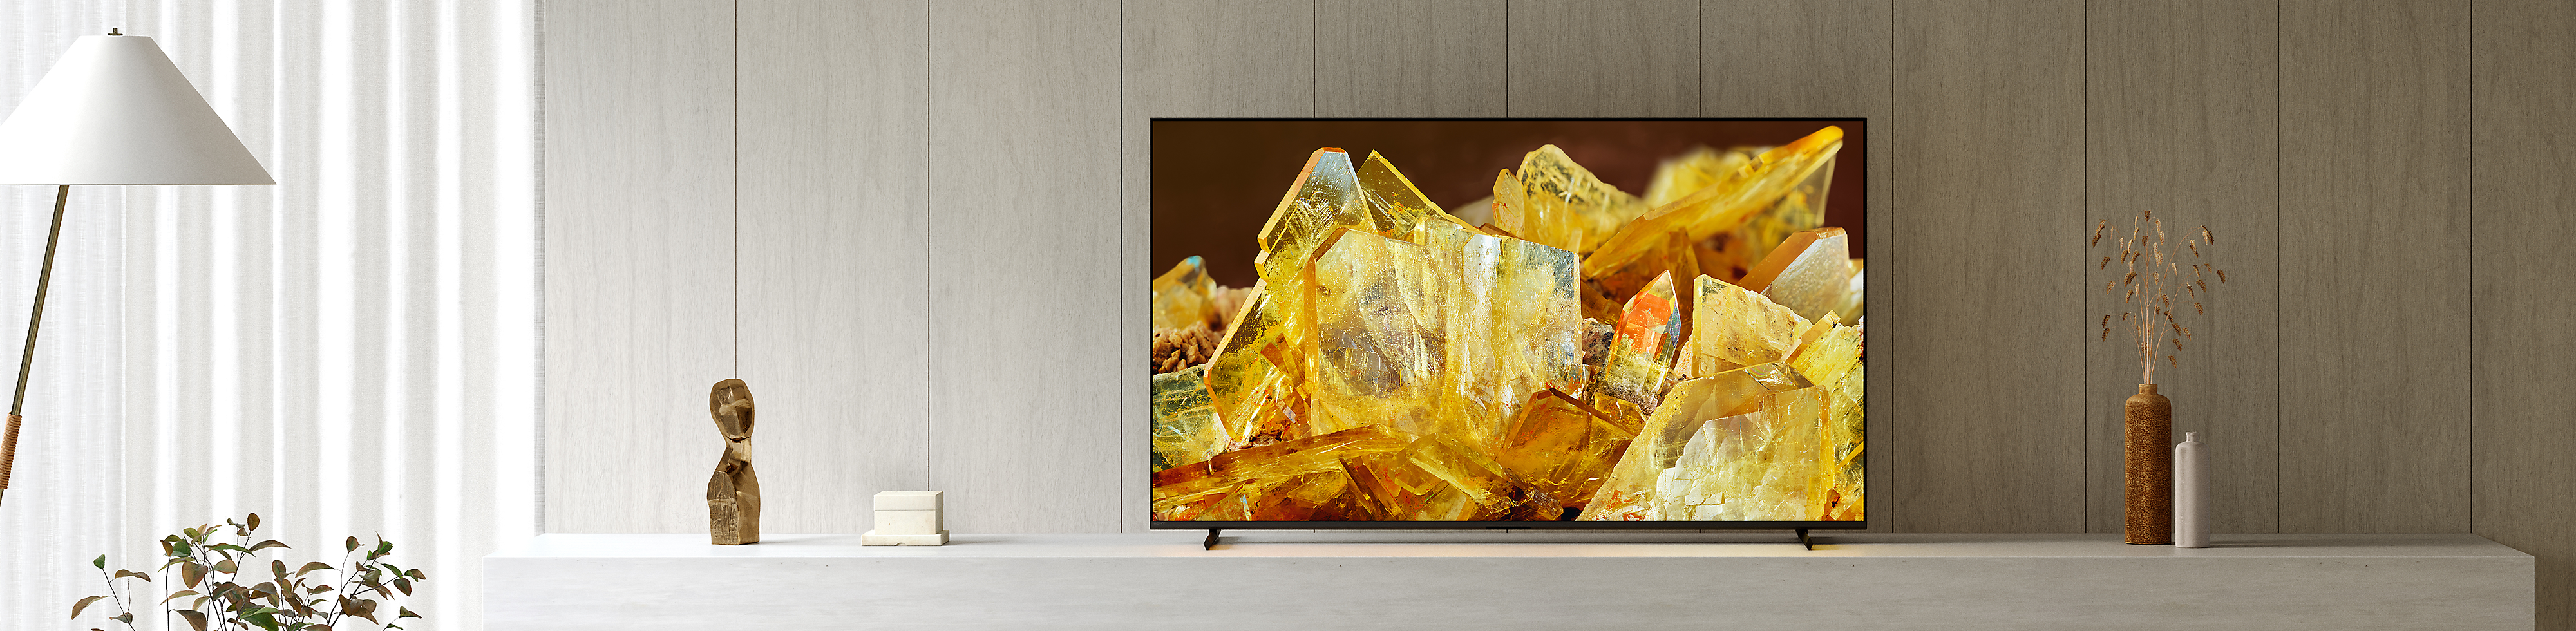 BRAVIA XR-tv i ett vardagsrum med en närbild på bärnstensfärgade kristaller